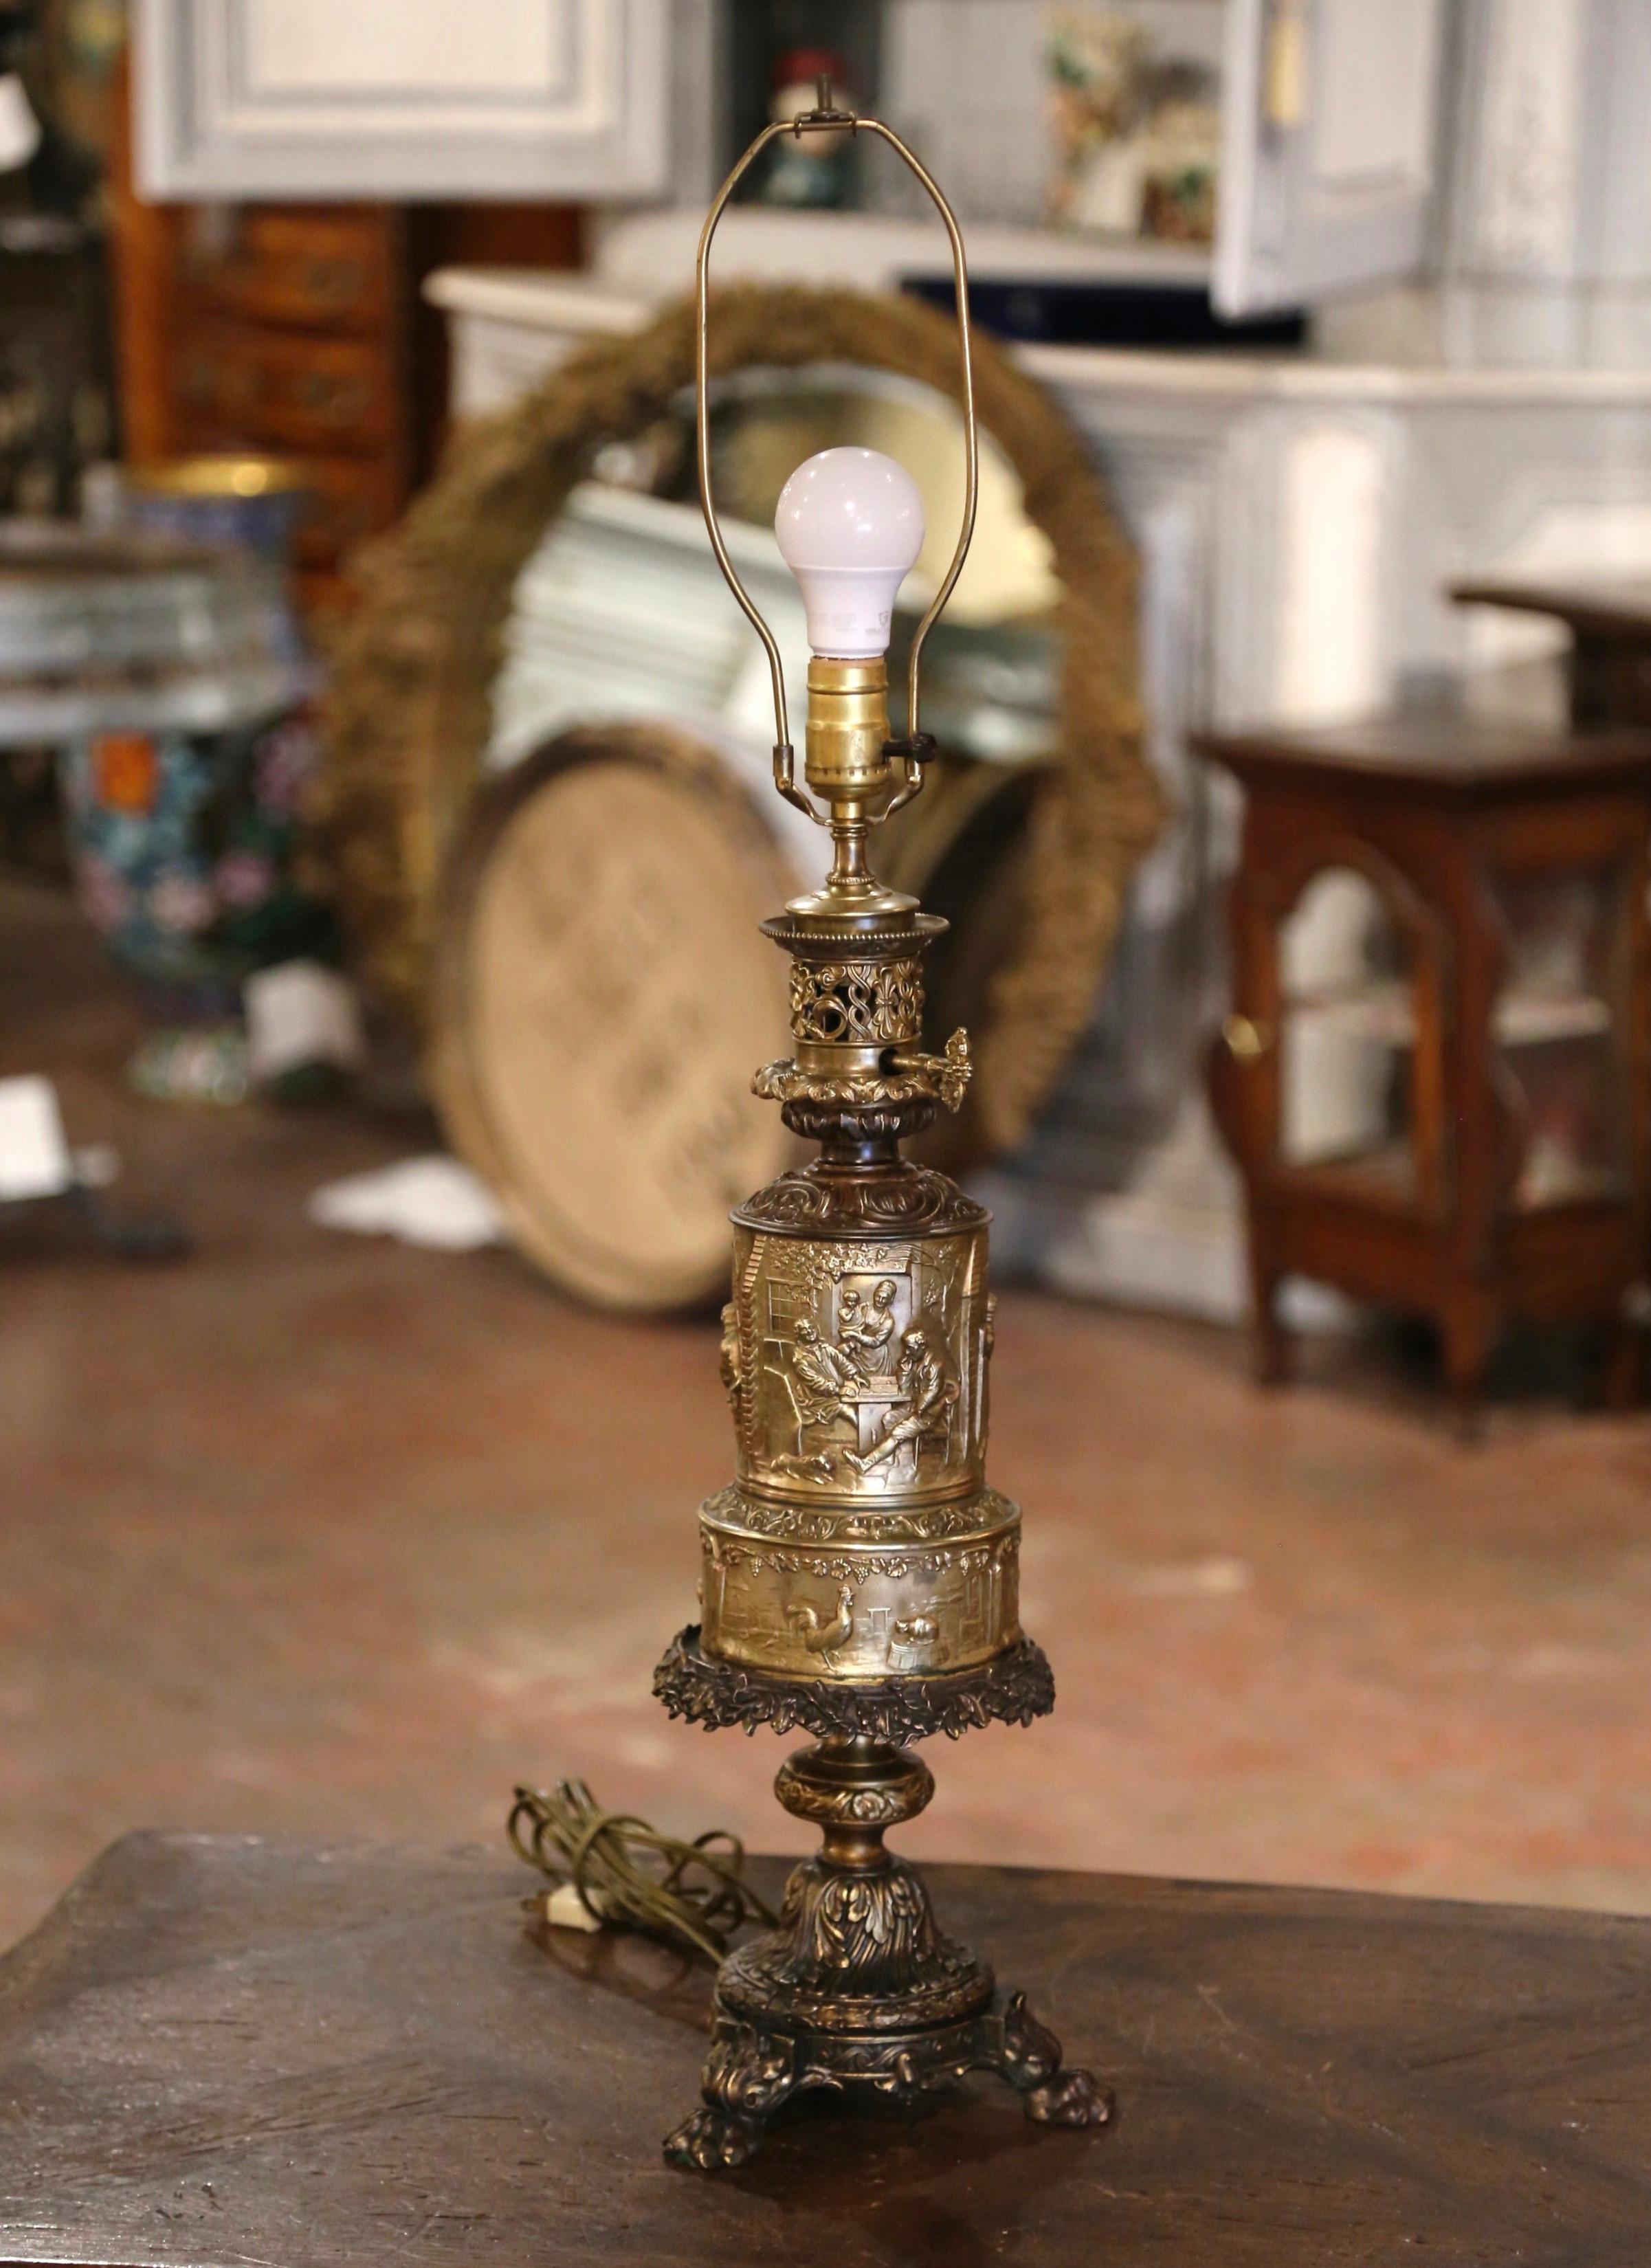 Cette élégante lampe à huile ancienne transformée en lampe de table a été fabriquée en France, vers 1870. La grande 